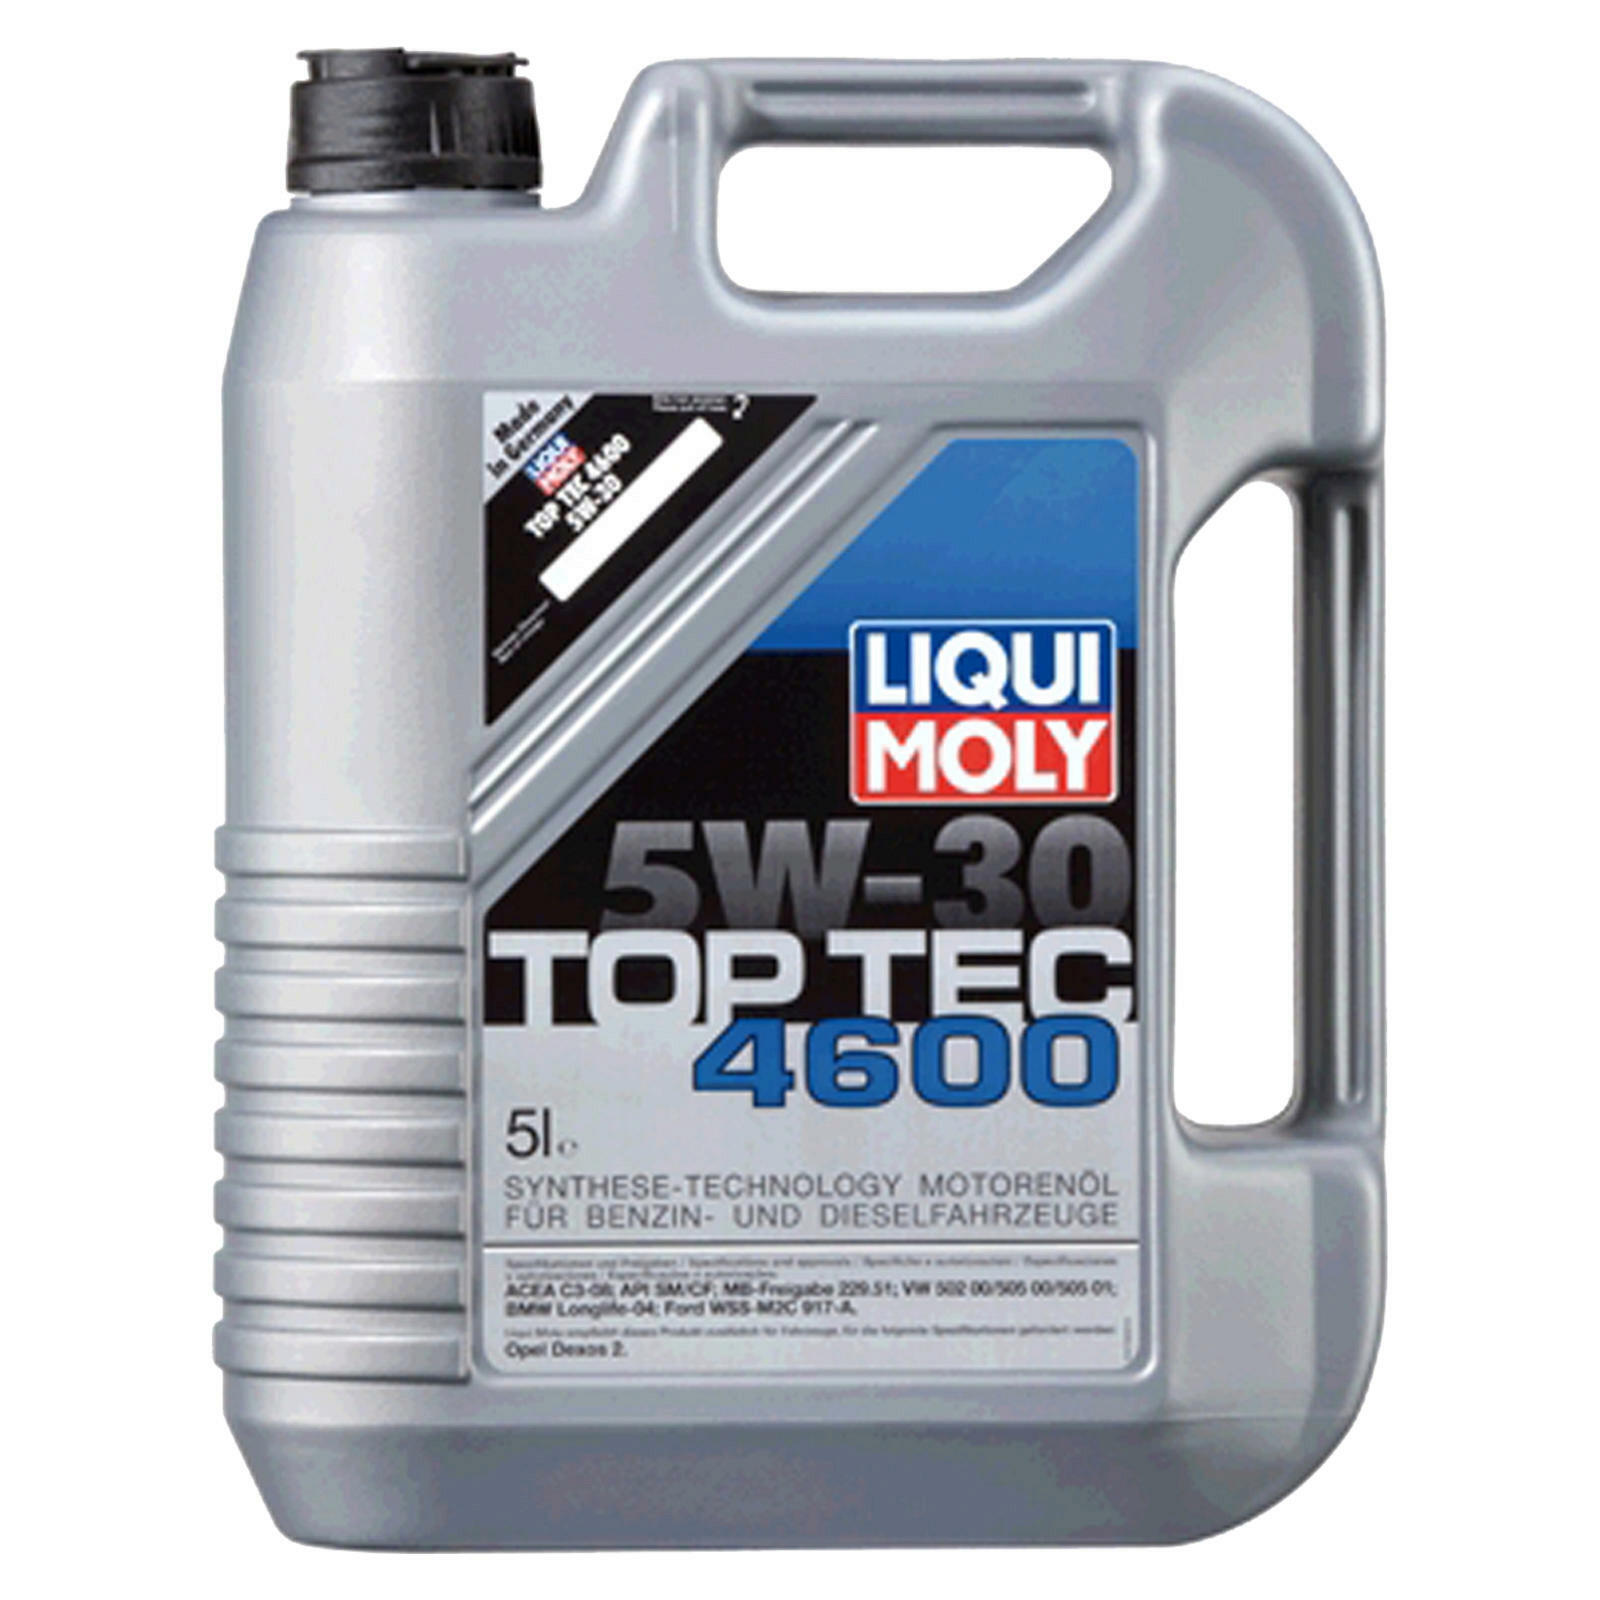 Liqui Moly Motoröl + Ölfilter + Luftfilter + Innenraumfilter + Kraftstofffilter + Ablassschraube